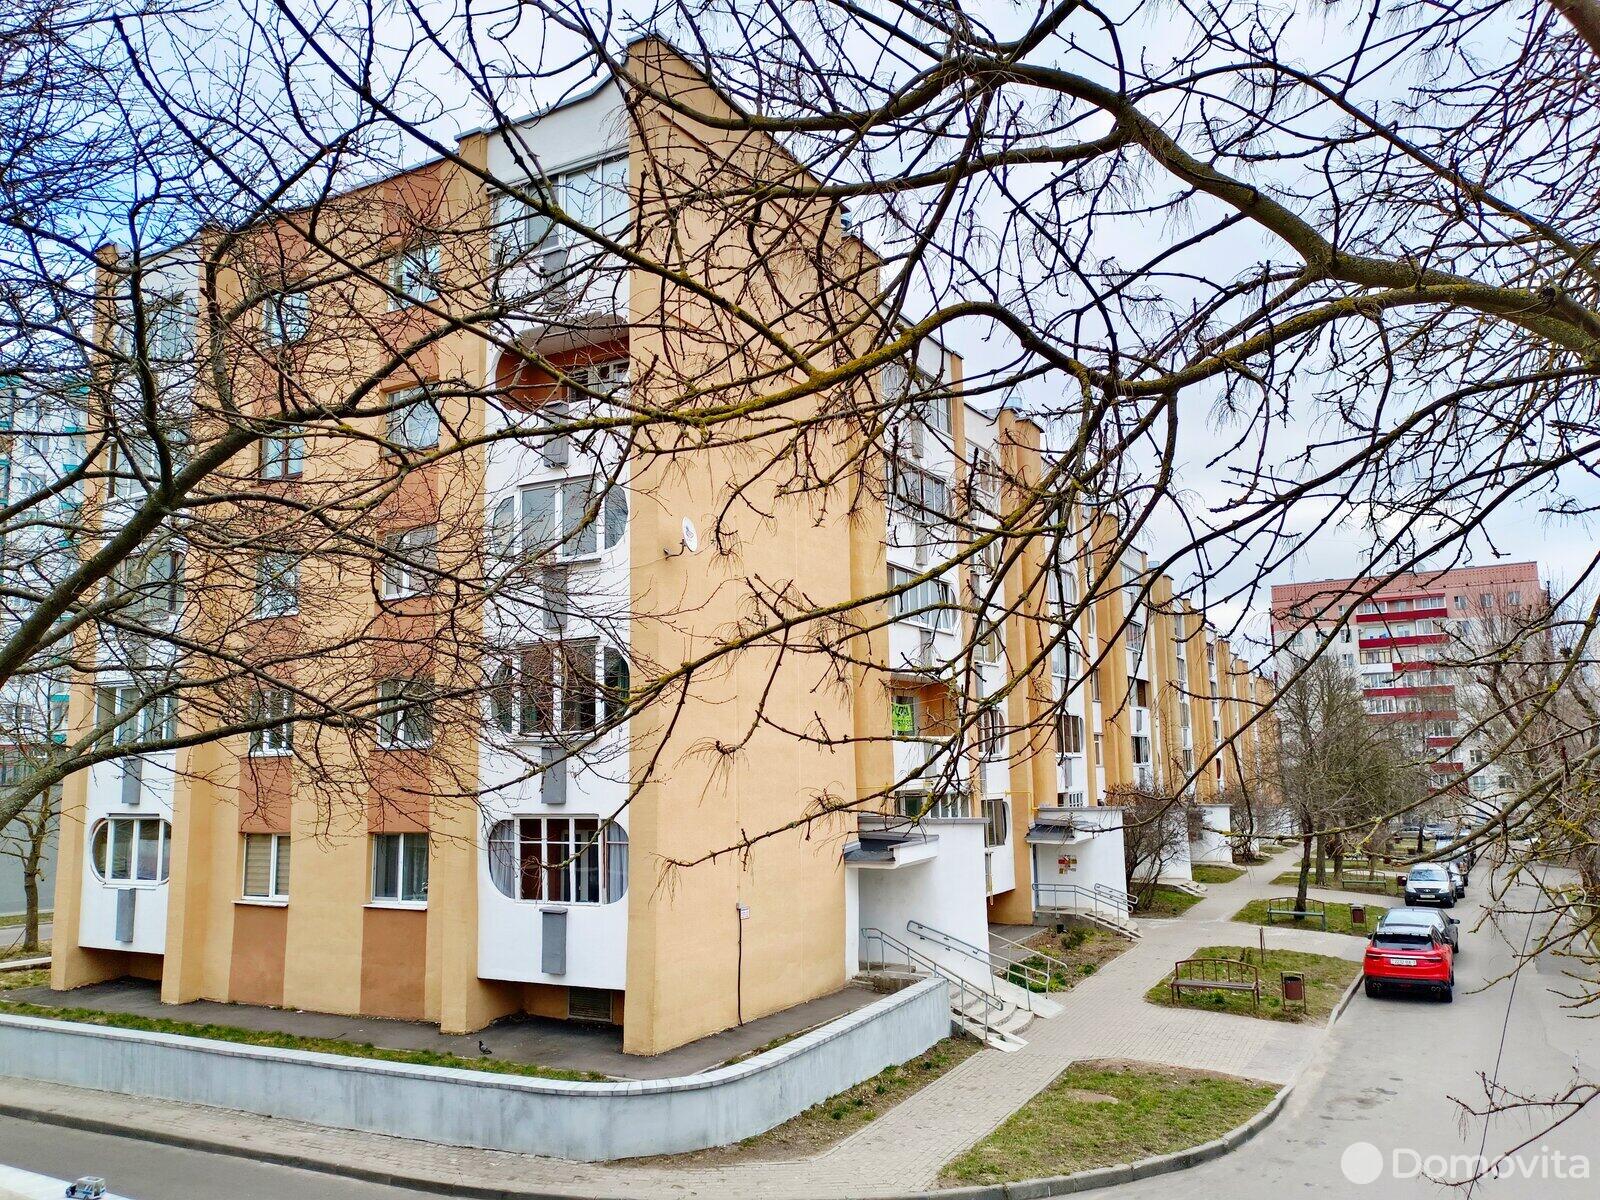 квартира, Минск, ул. Лили Карастояновой, д. 43, стоимость продажи 350 339 р.